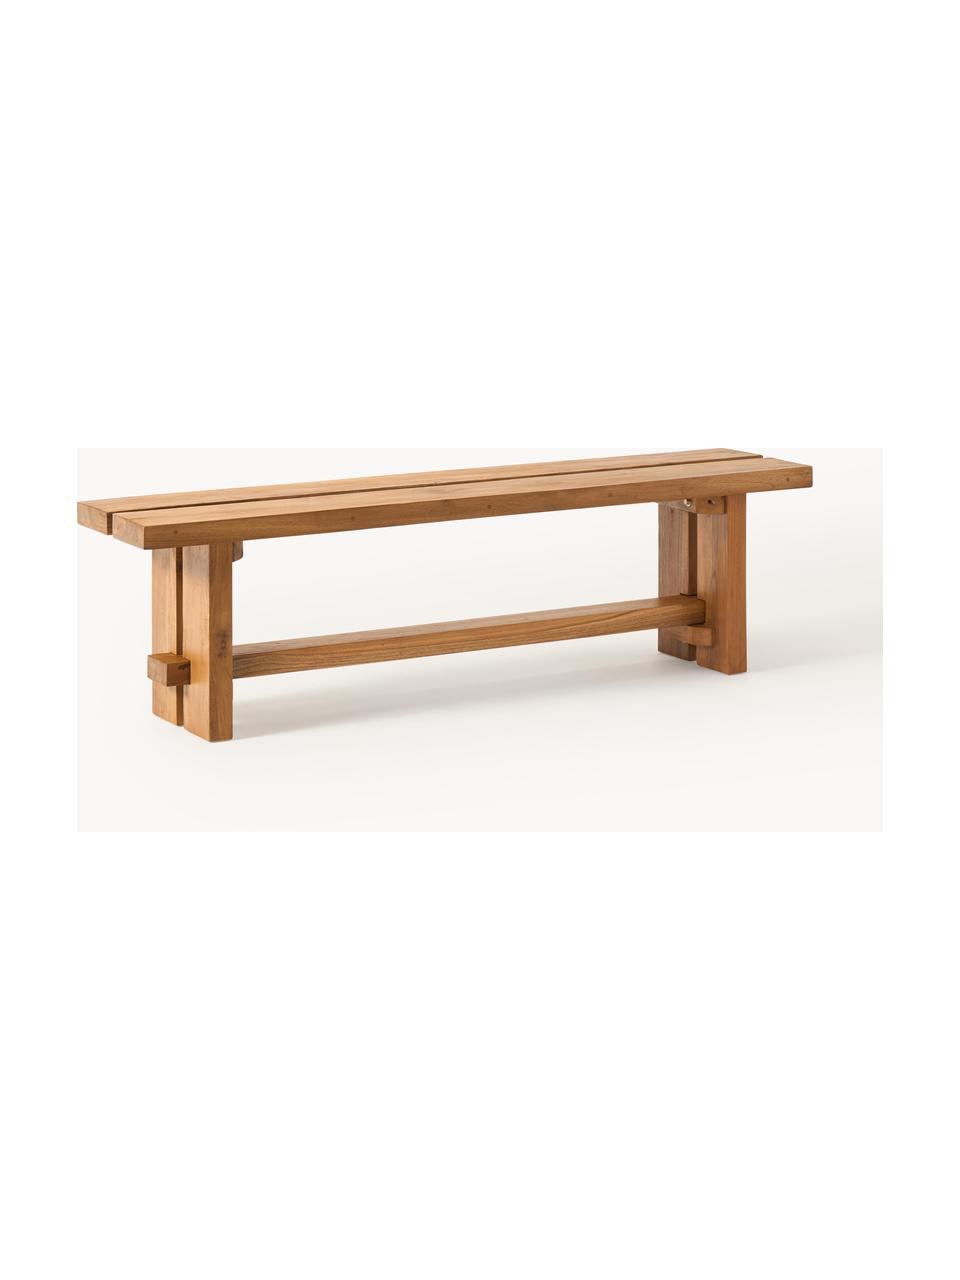 Sitzbank Hugo aus Teakholz, verschiedene Größen, Teakholz, gebeizt

Dieses Produkt wird aus nachhaltig gewonnenem, FSC®-zertifiziertem Holz gefertigt., Teakholz, gebeizt, B 160 x T 35 cm